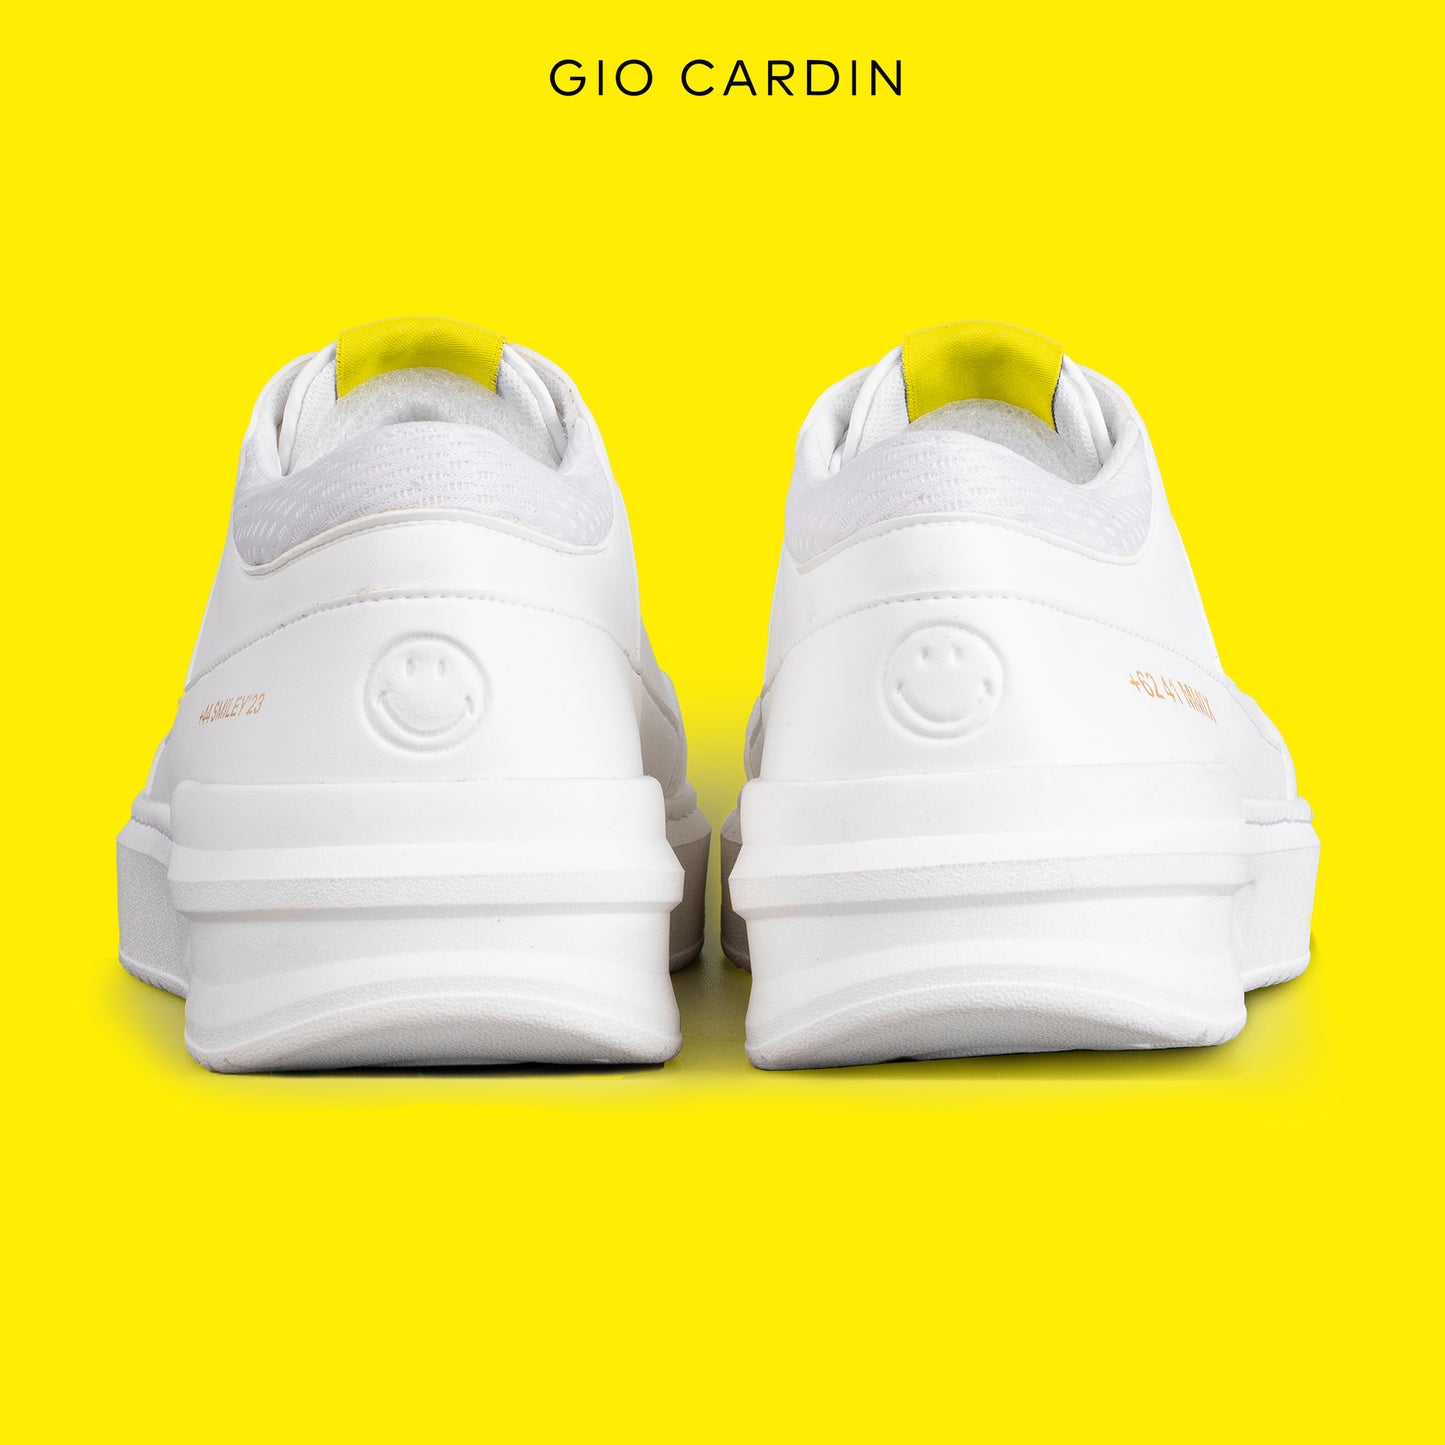 GIO CARDIN x SMILEY - RIES - TRIPLE WHITE